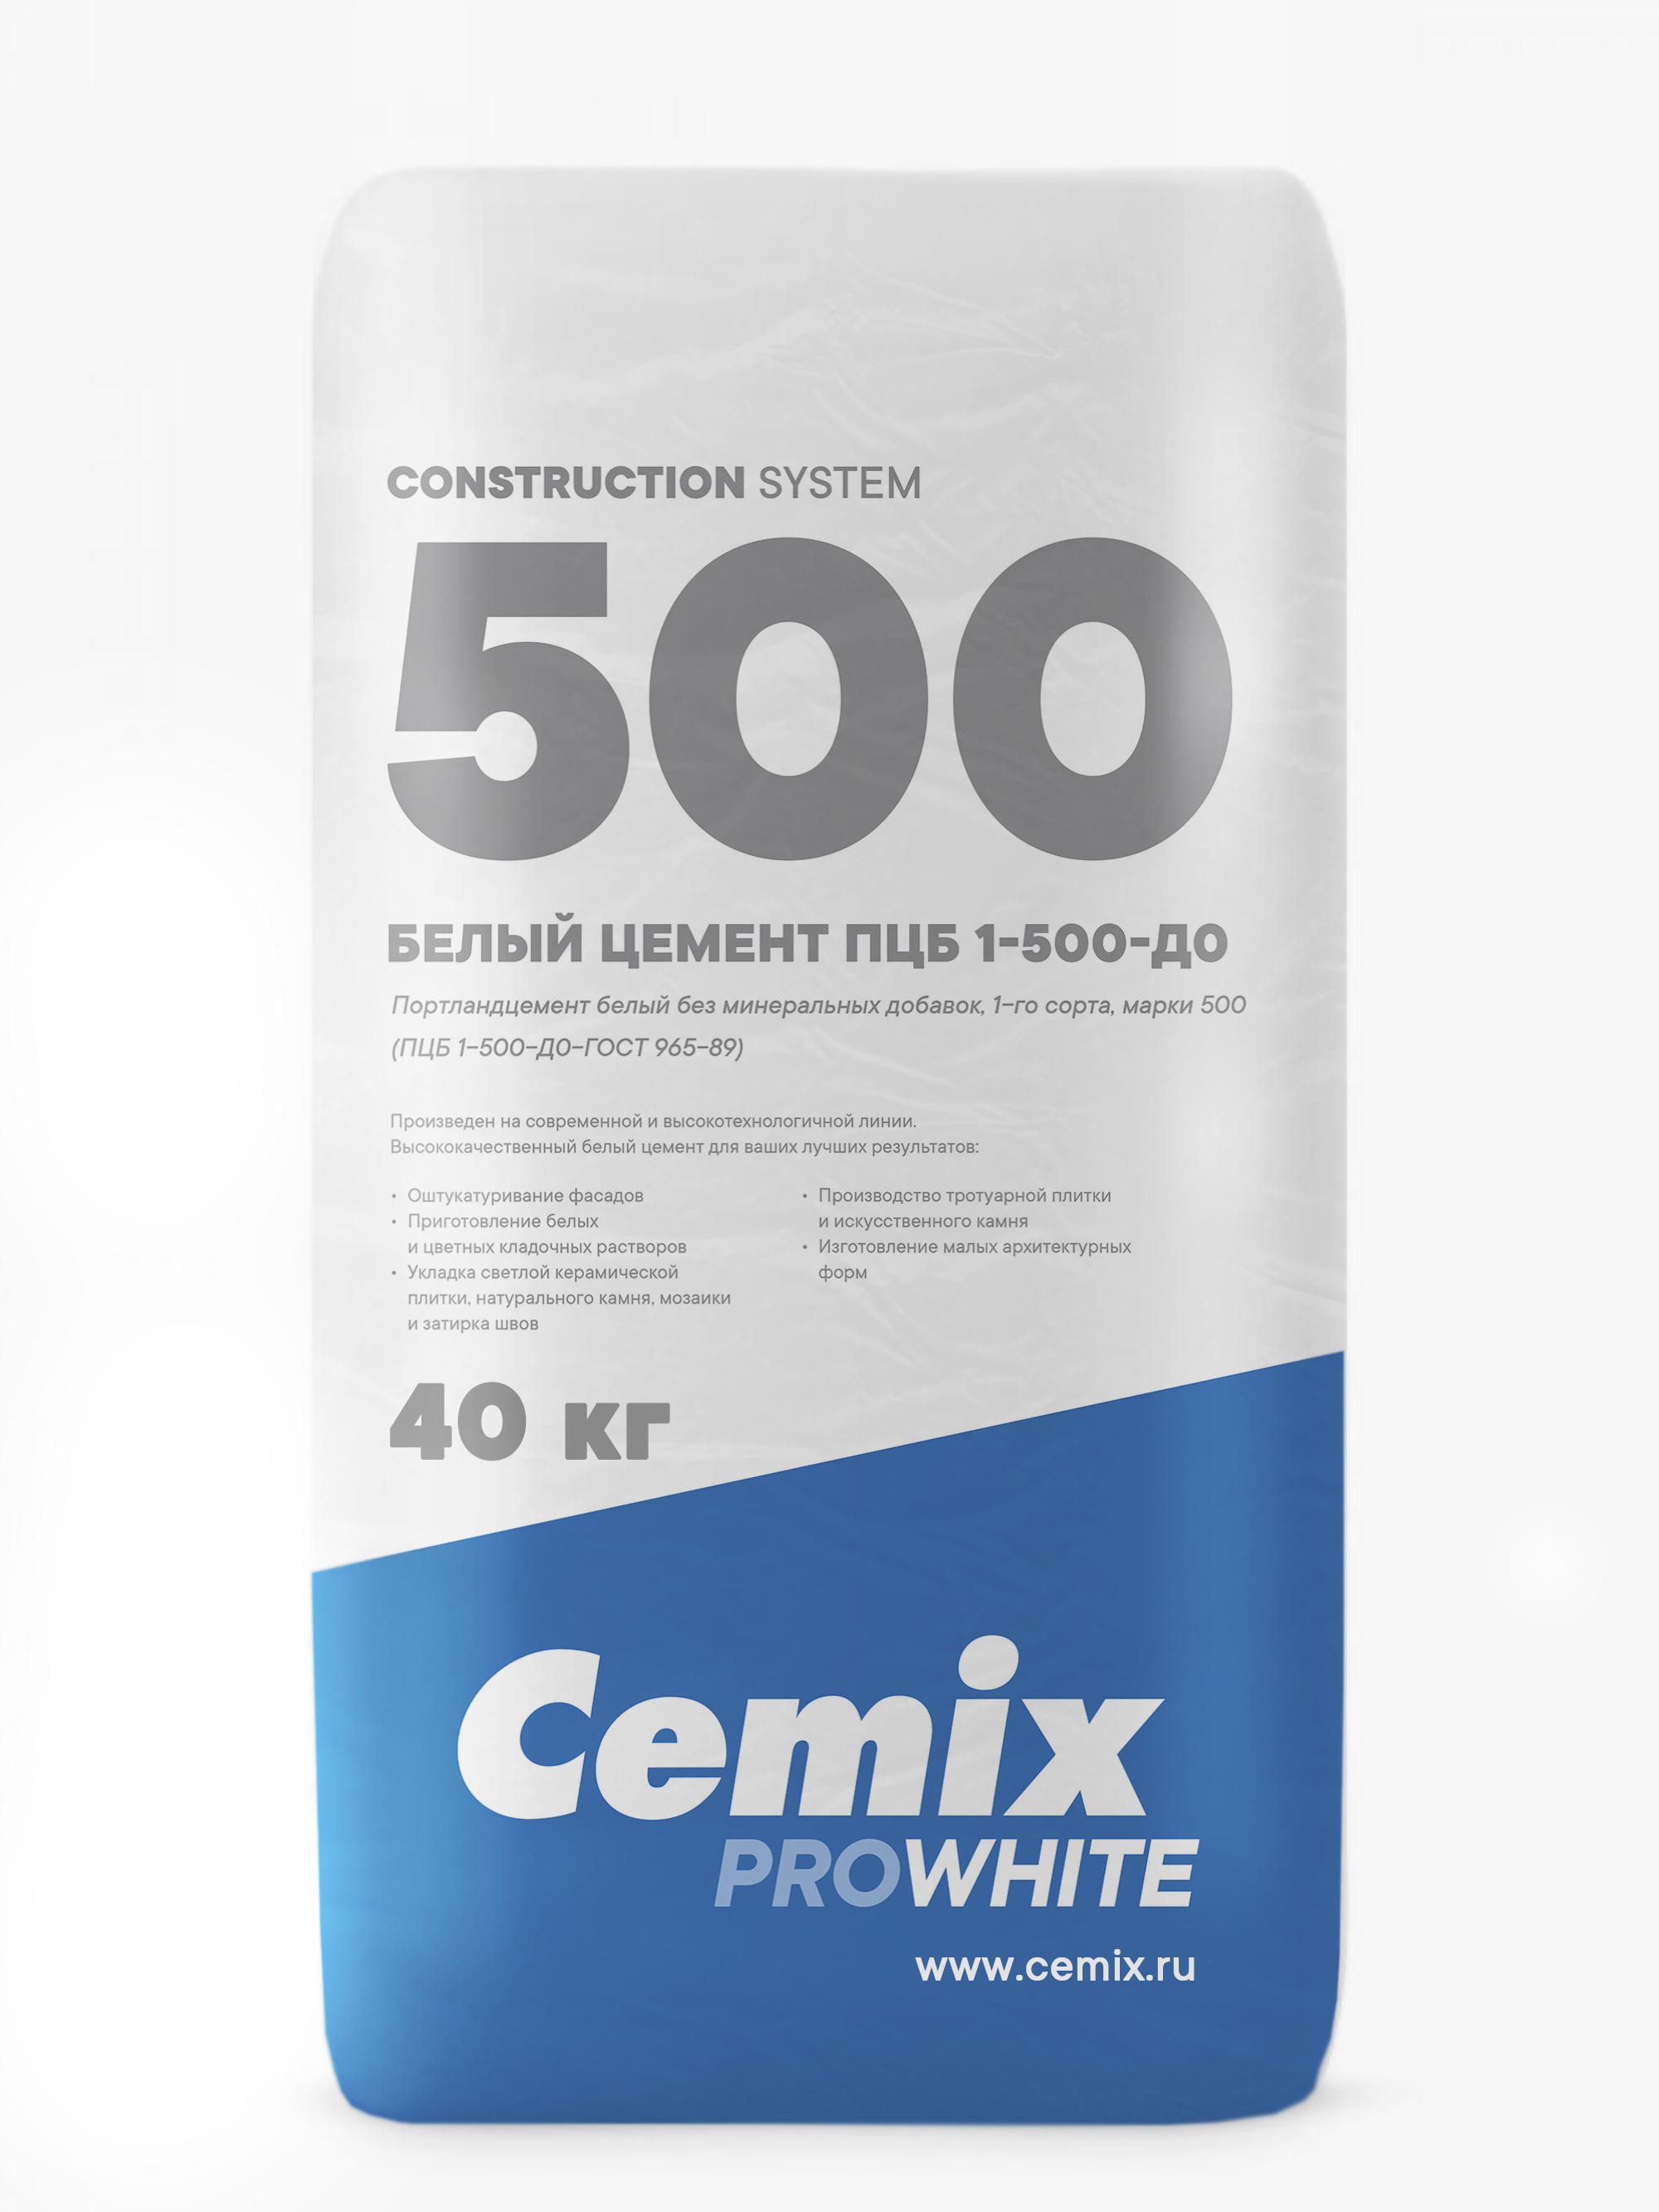 Цемент (Россия, Cemix) ПЦБ 1 - 500 -ДО мешок 40 кг на паллете (1400кг)